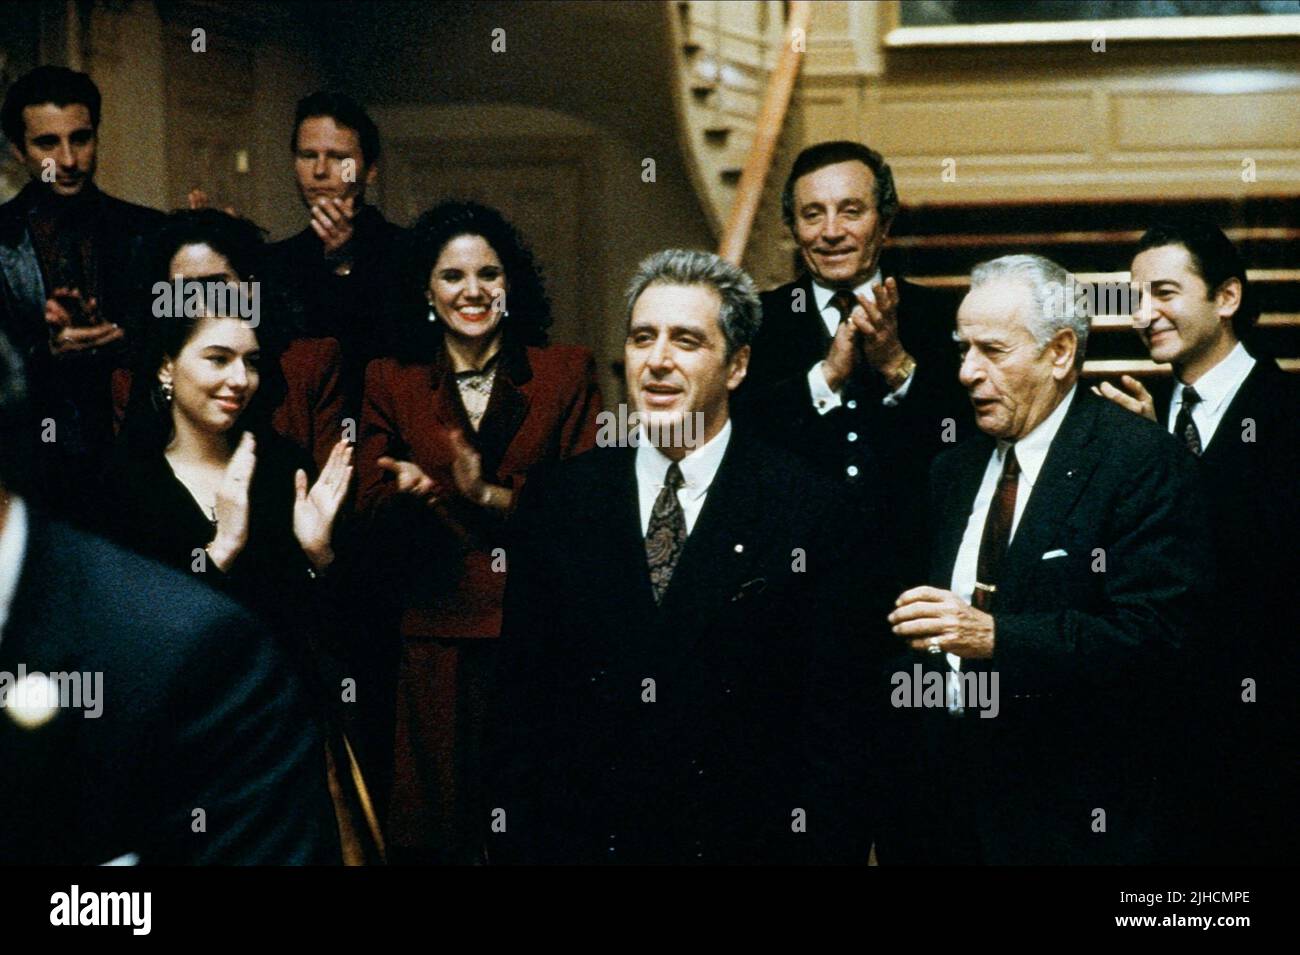 SOFIA COPPOLA, AL PACINO, AL MARTINO, ELI WALLACH, THE GODFATHER: PART III, 1990 Stock Photo